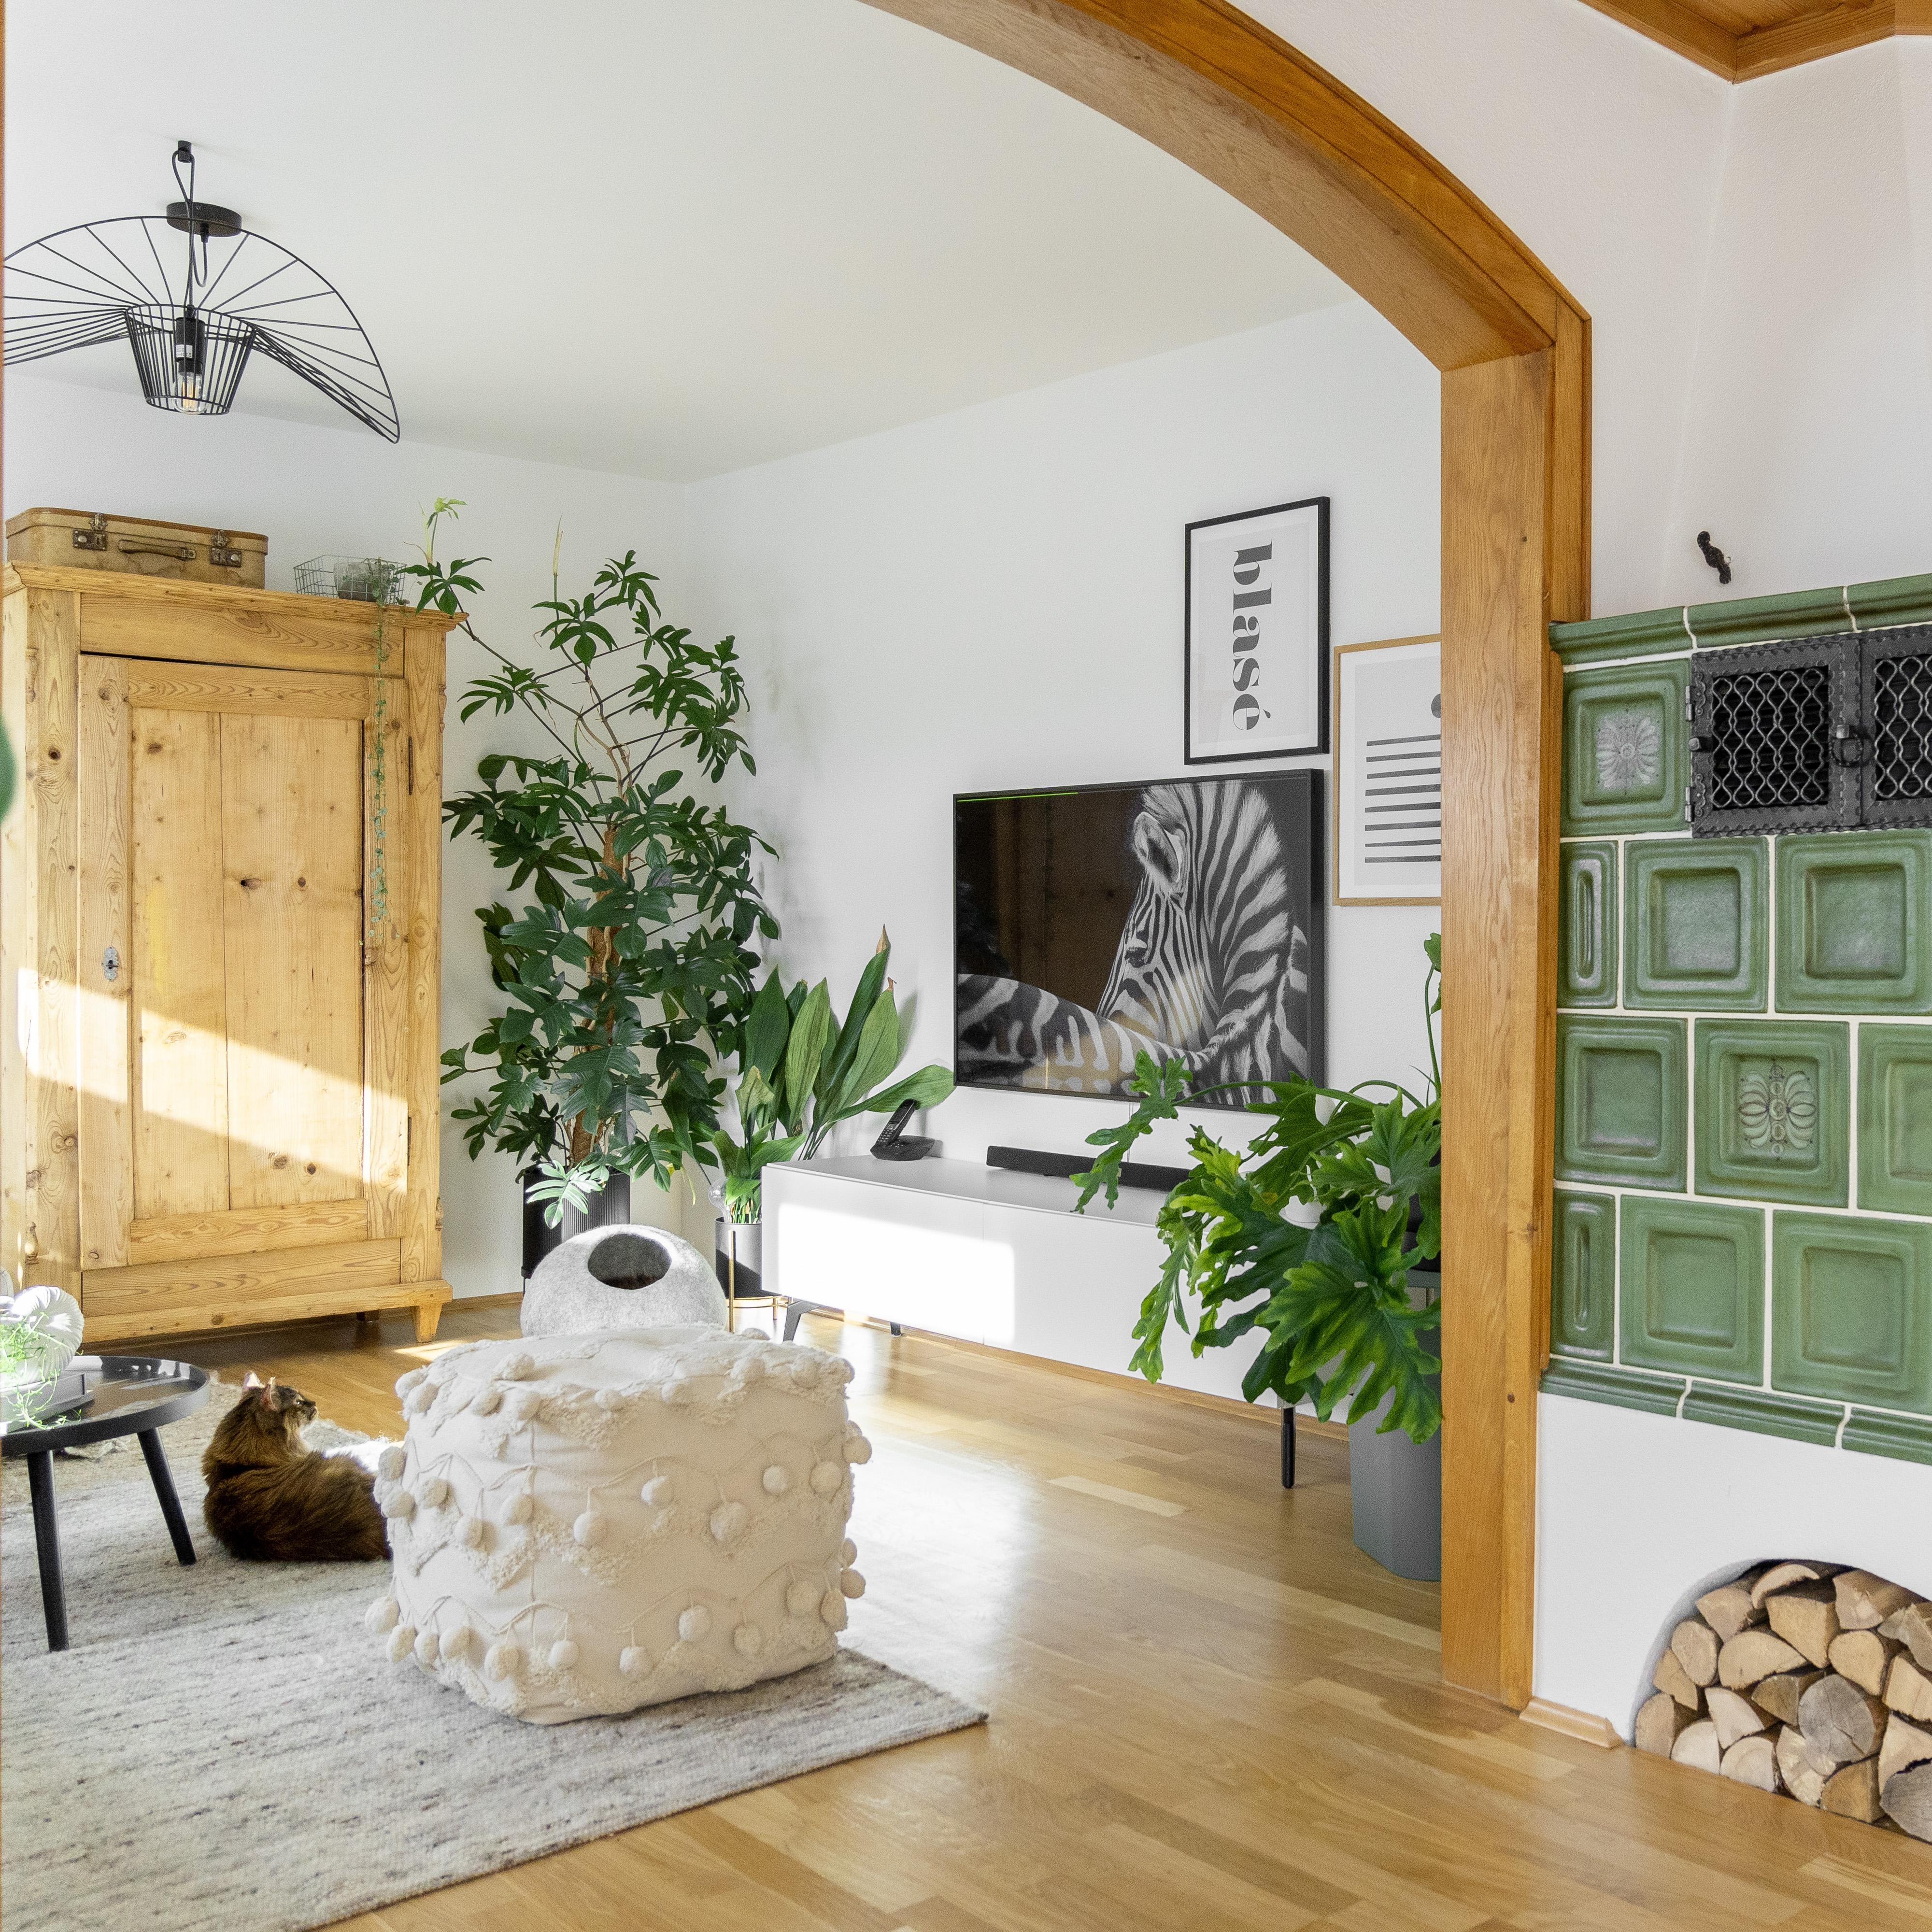 #kachelofen#wohnen #wohnzimmer #livingroom#scandi#hygge #gemütlich#renovieren#dekorieren #cozy#solebich#altbau #haus